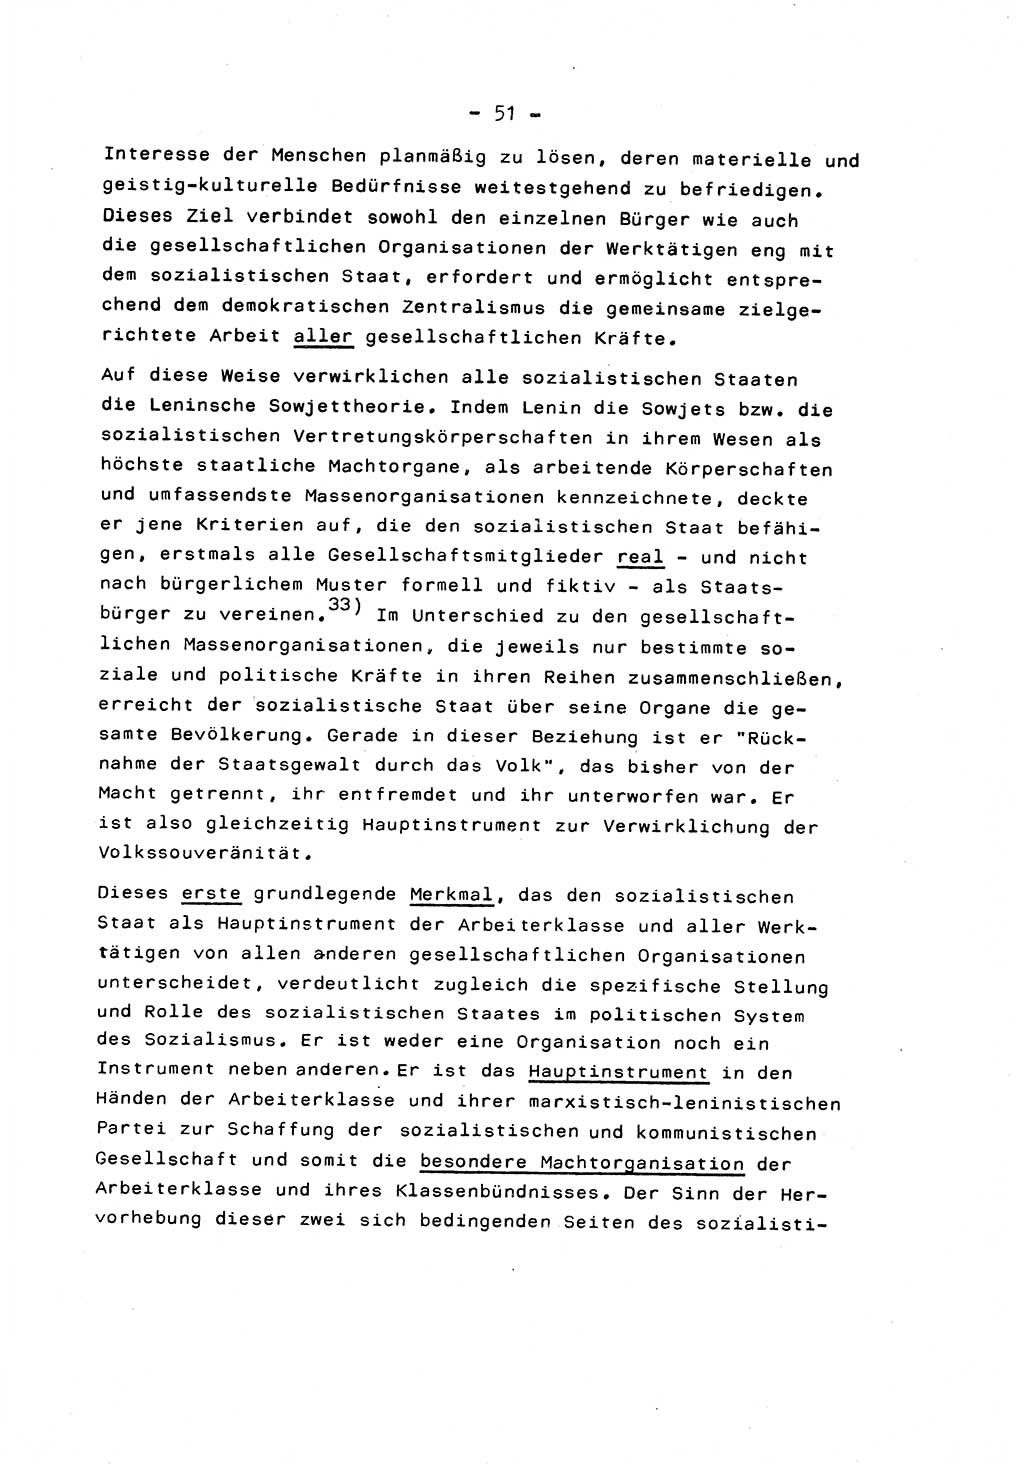 Marxistisch-leninistische Staats- und Rechtstheorie [Deutsche Demokratische Republik (DDR)] 1975, Seite 51 (ML St.-R.-Th. DDR 1975, S. 51)